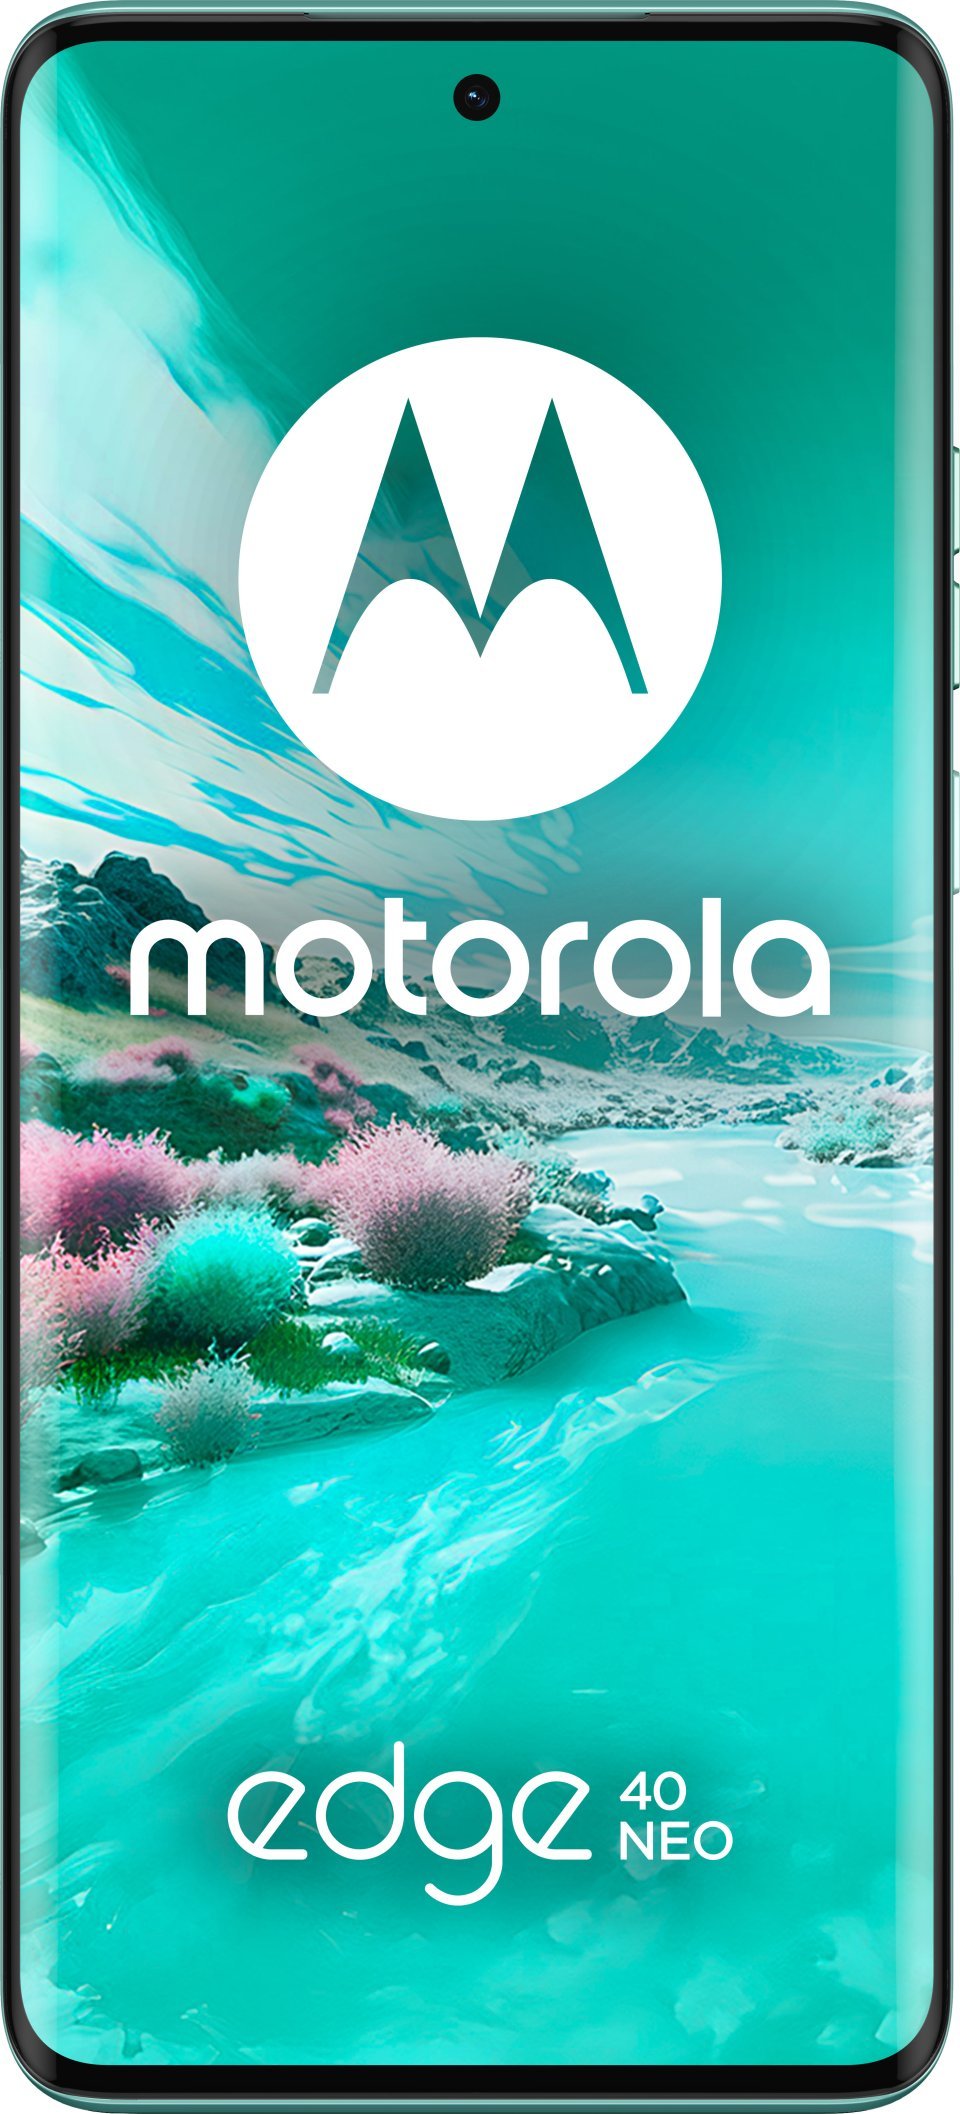 Motorola edge 40 neo, análisis - review con opinión y características